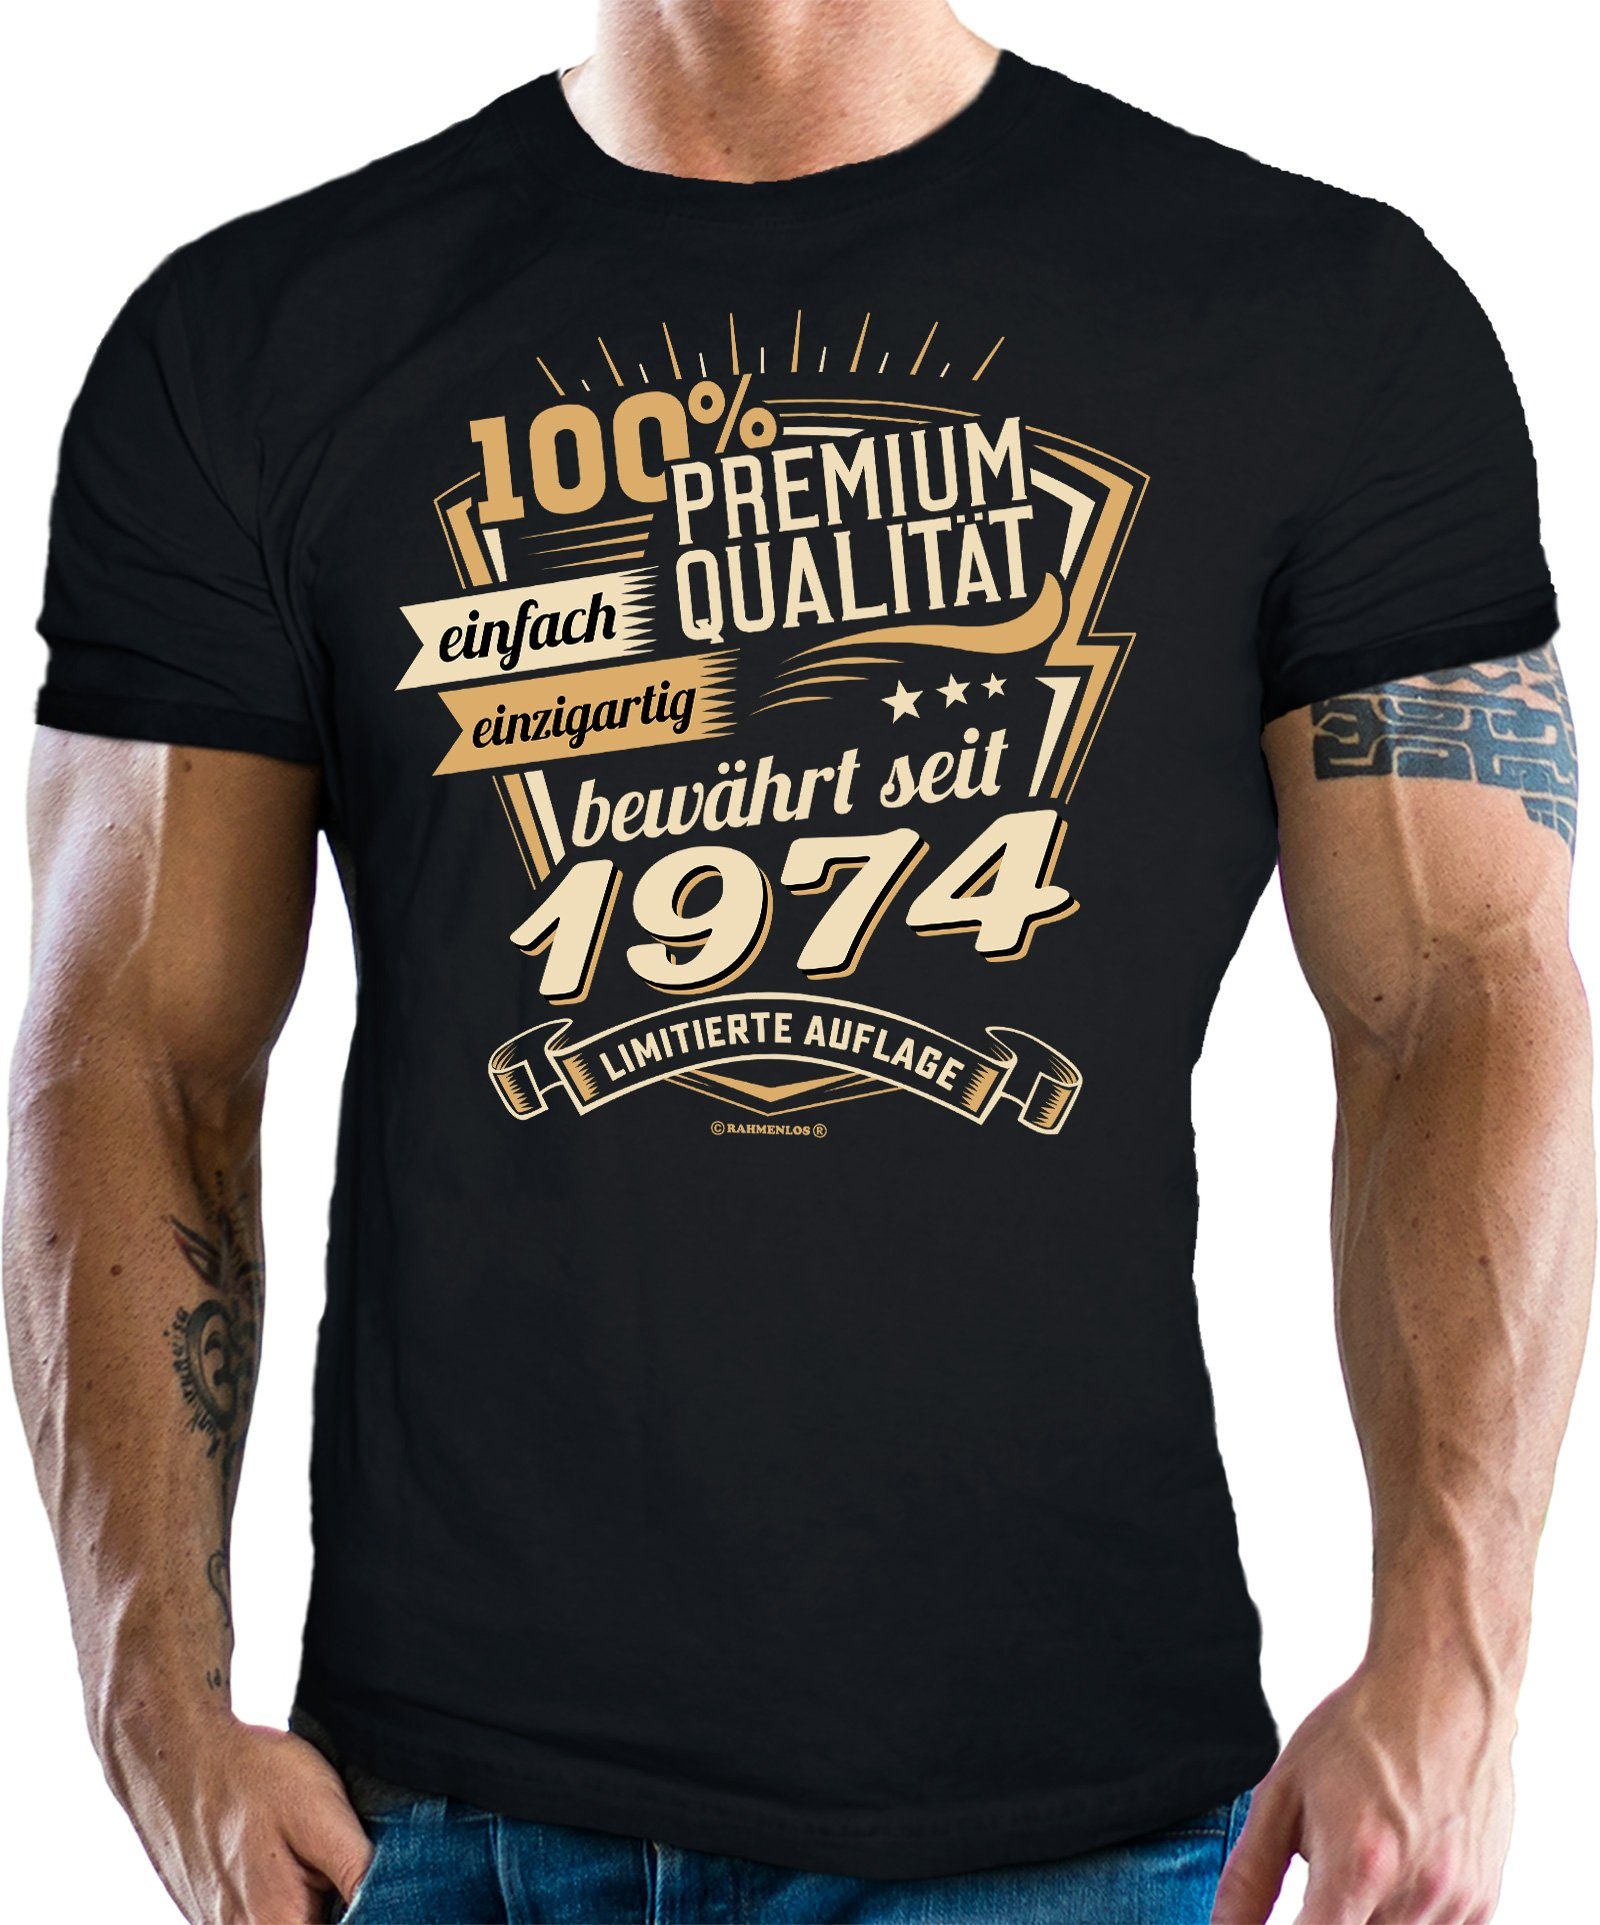 Rahmenlos T-Shirt als Geschenk zum 50. Geburtstag - Premium bewährt seit 1974